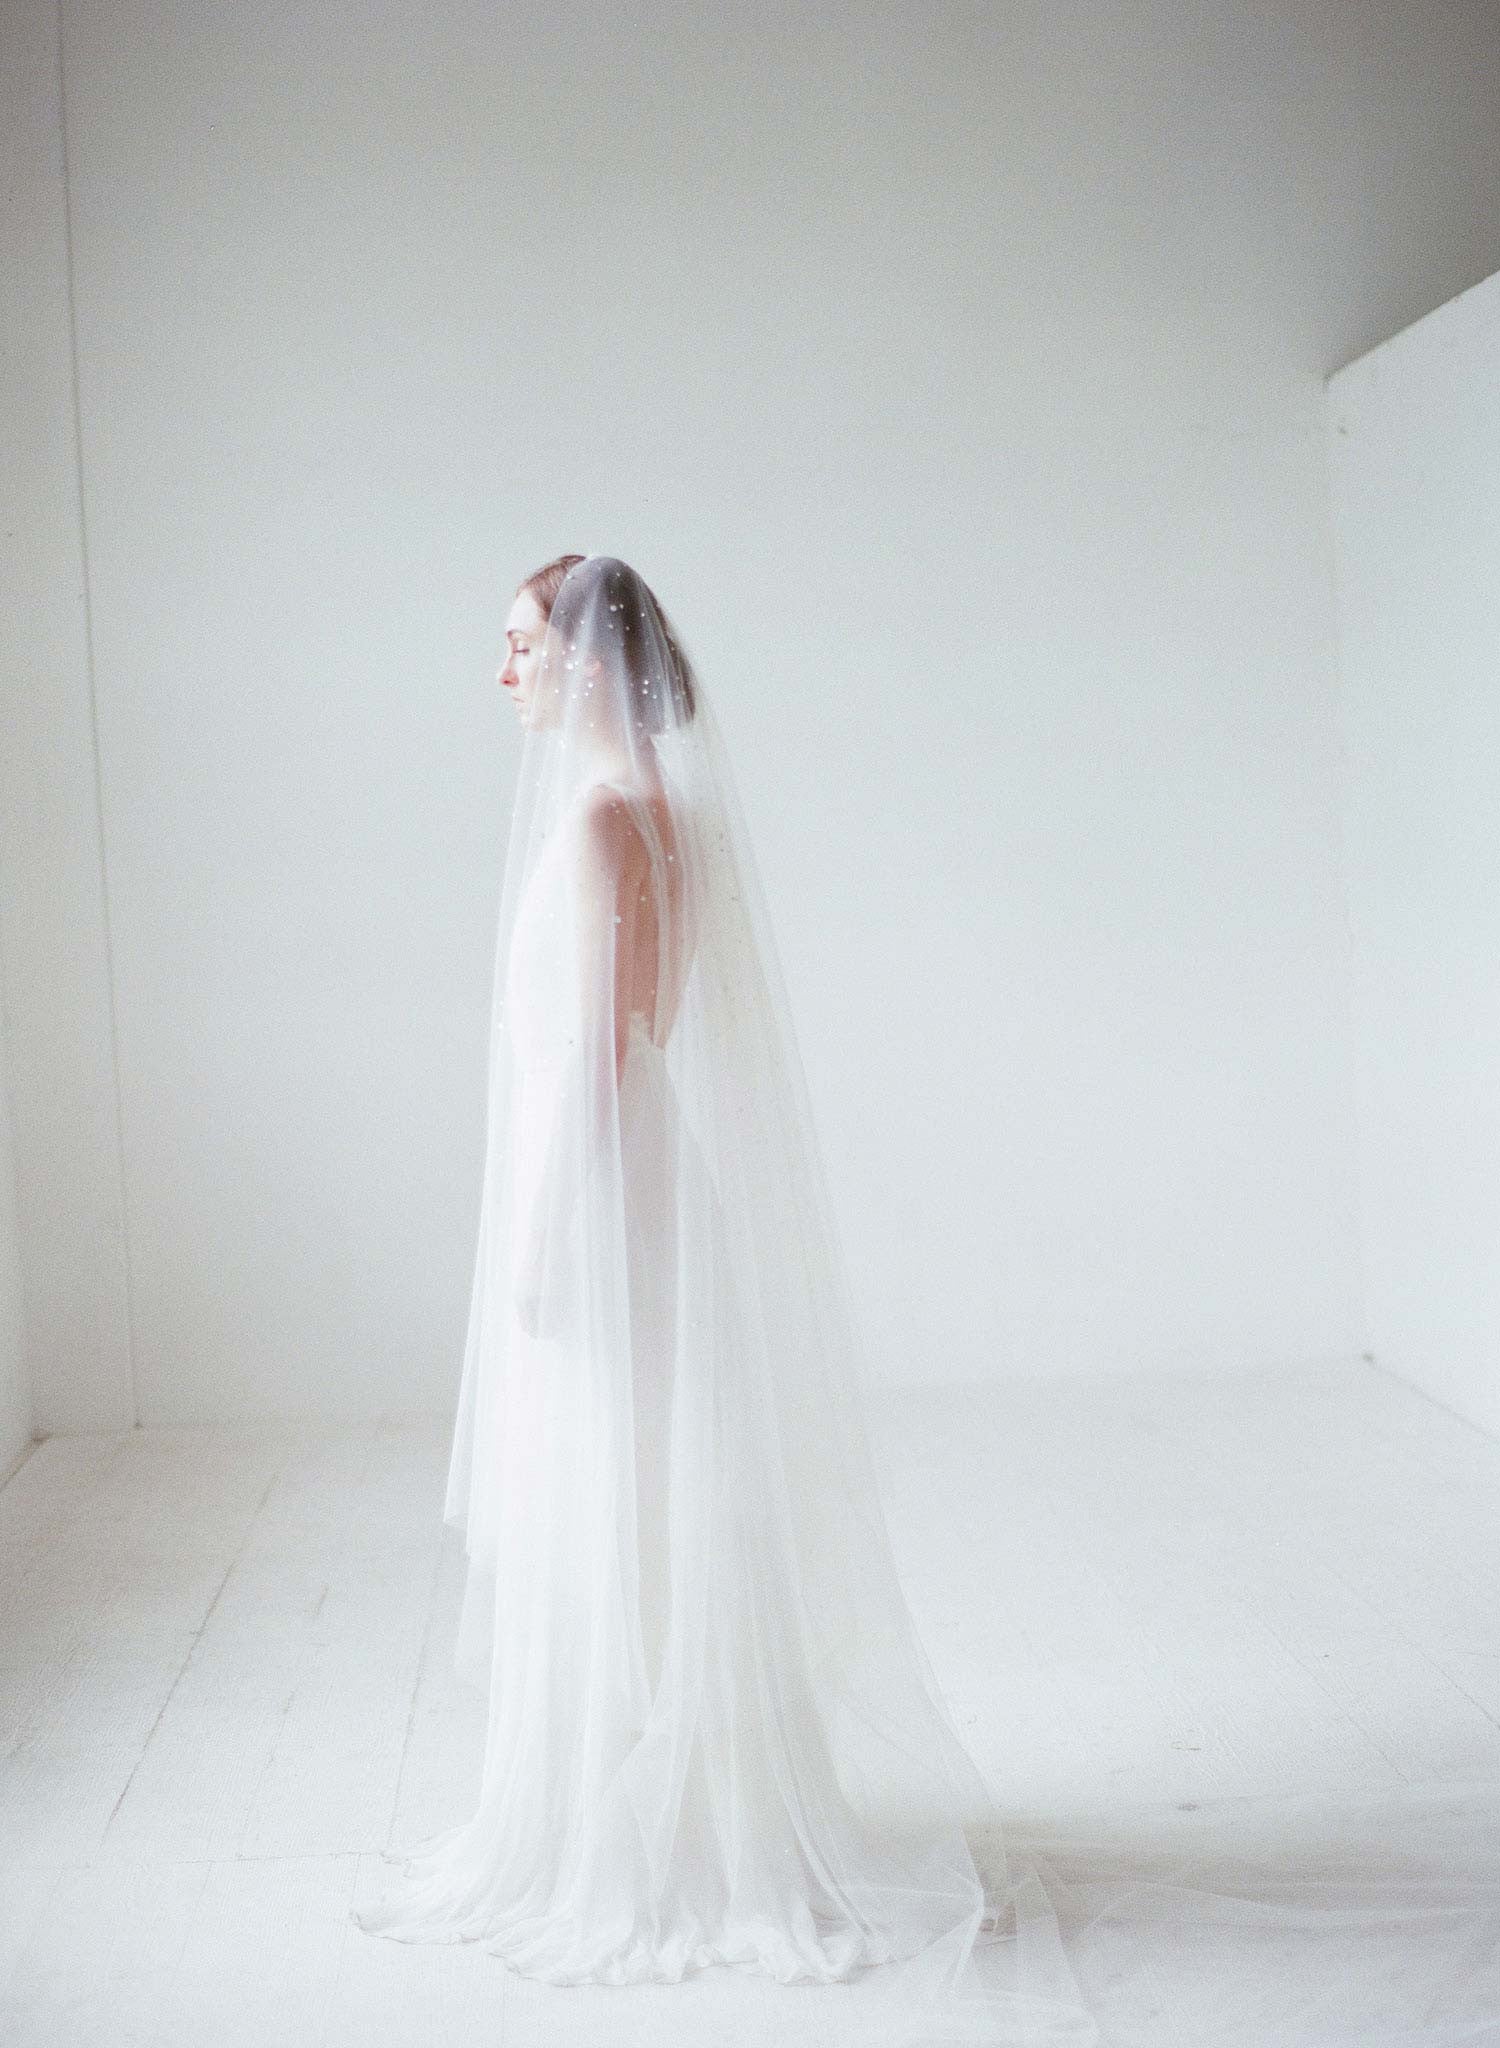 Crystal Chapel Wedding Veil by Twigs and Honey - Crystal Confetti Train Bridal Veil - Style #2062